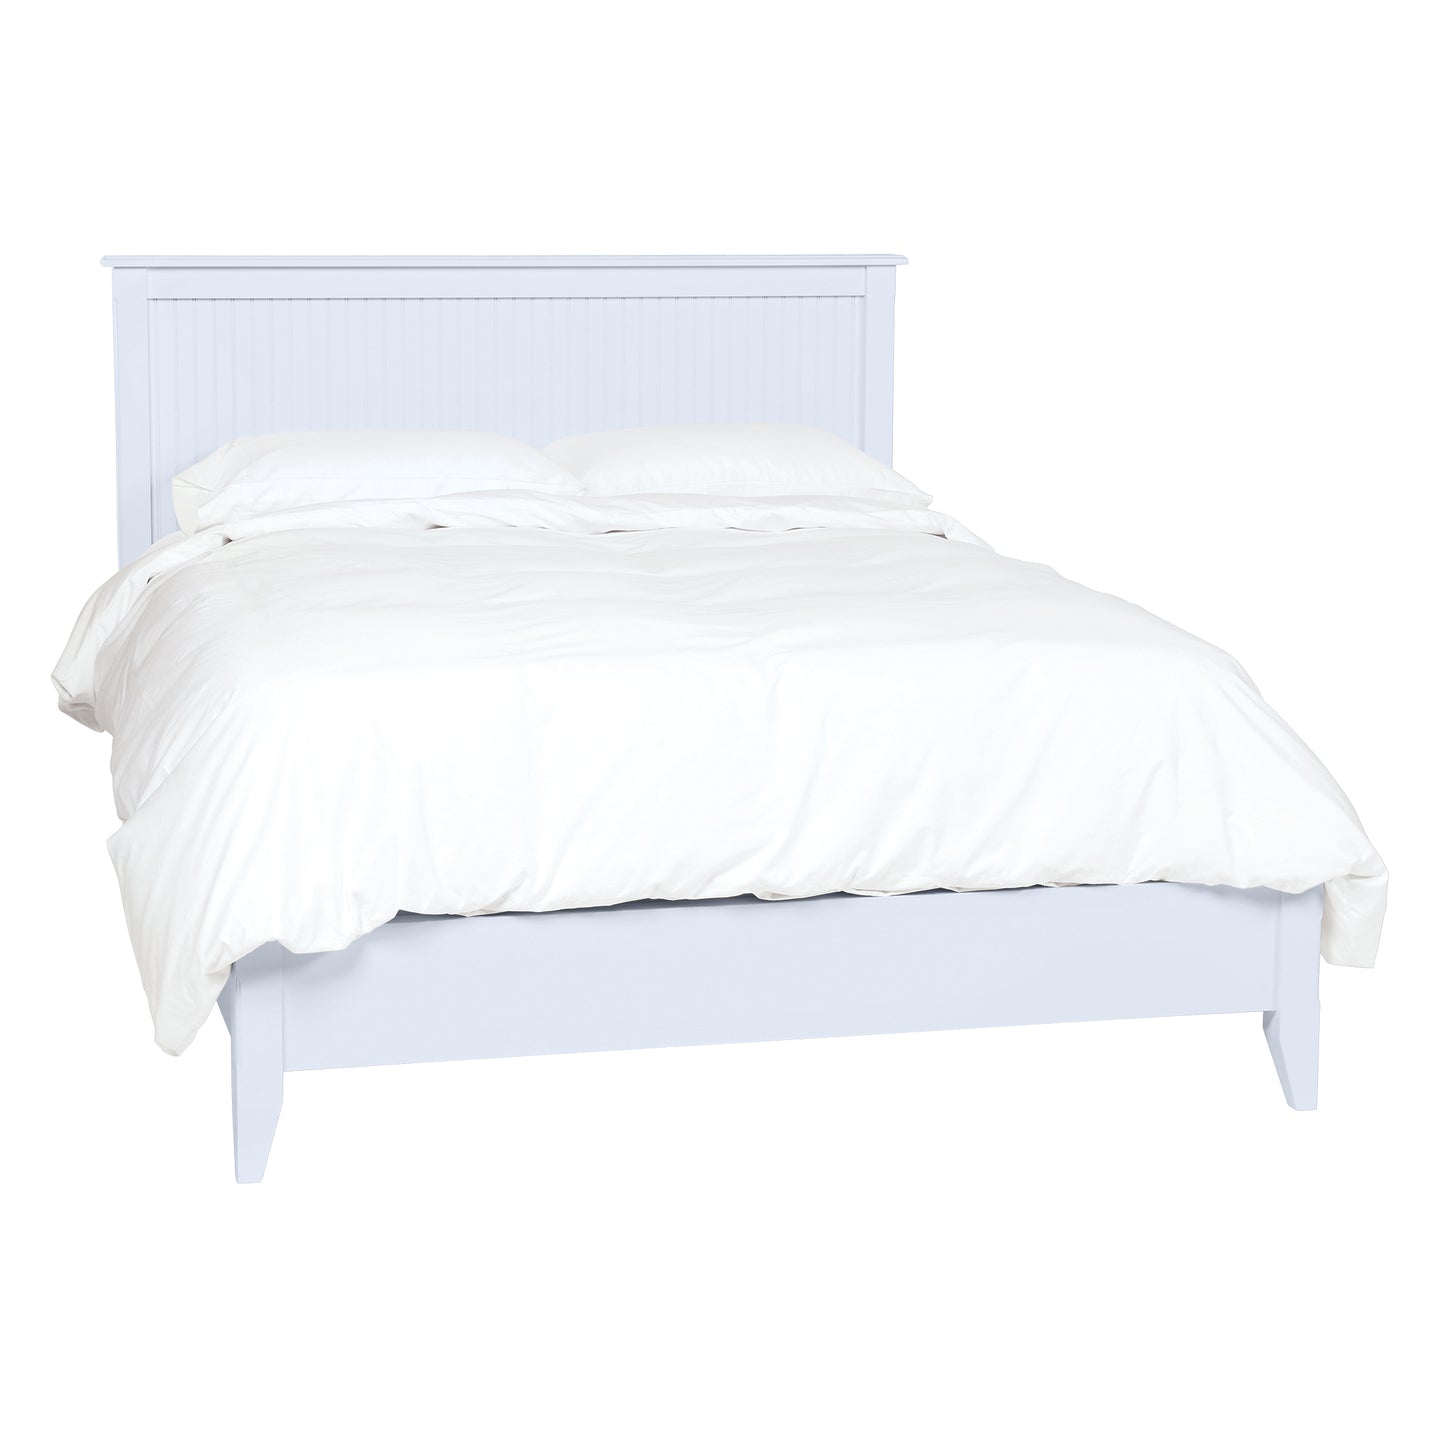 Lily Queen Standard Bed in Wisp